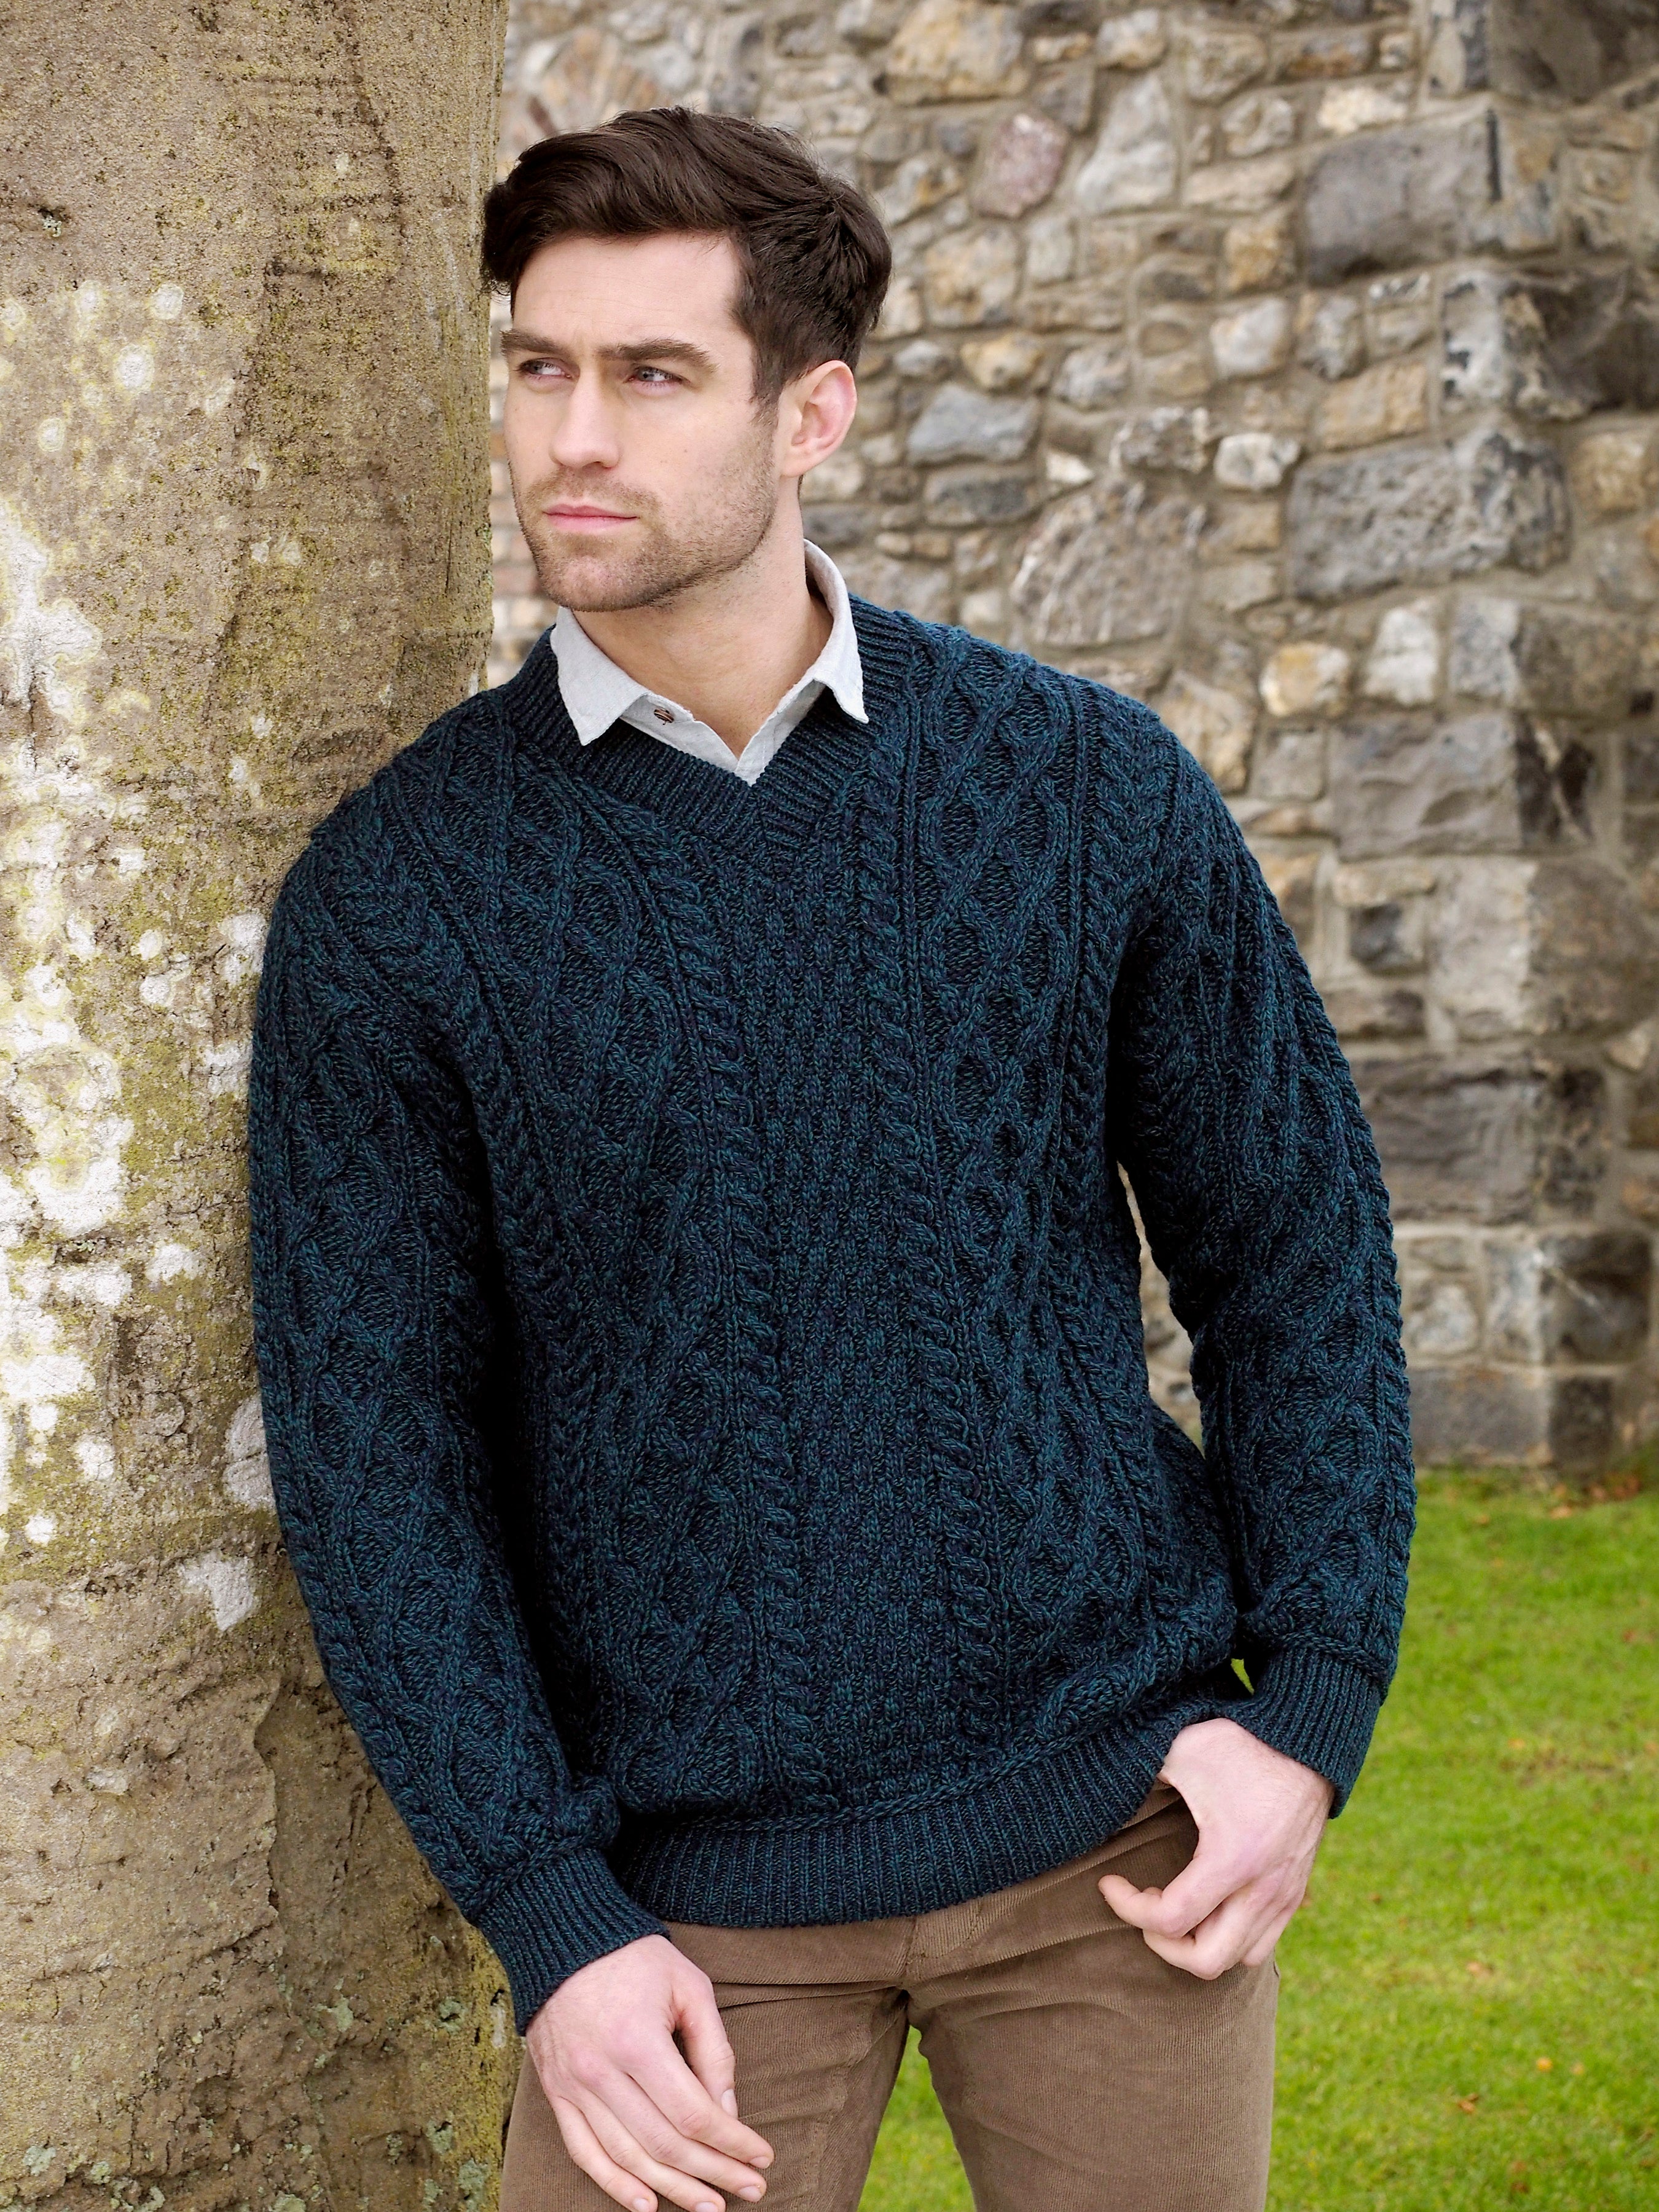 Aran Sweaters, Irish Clothing & Wool Sweaters